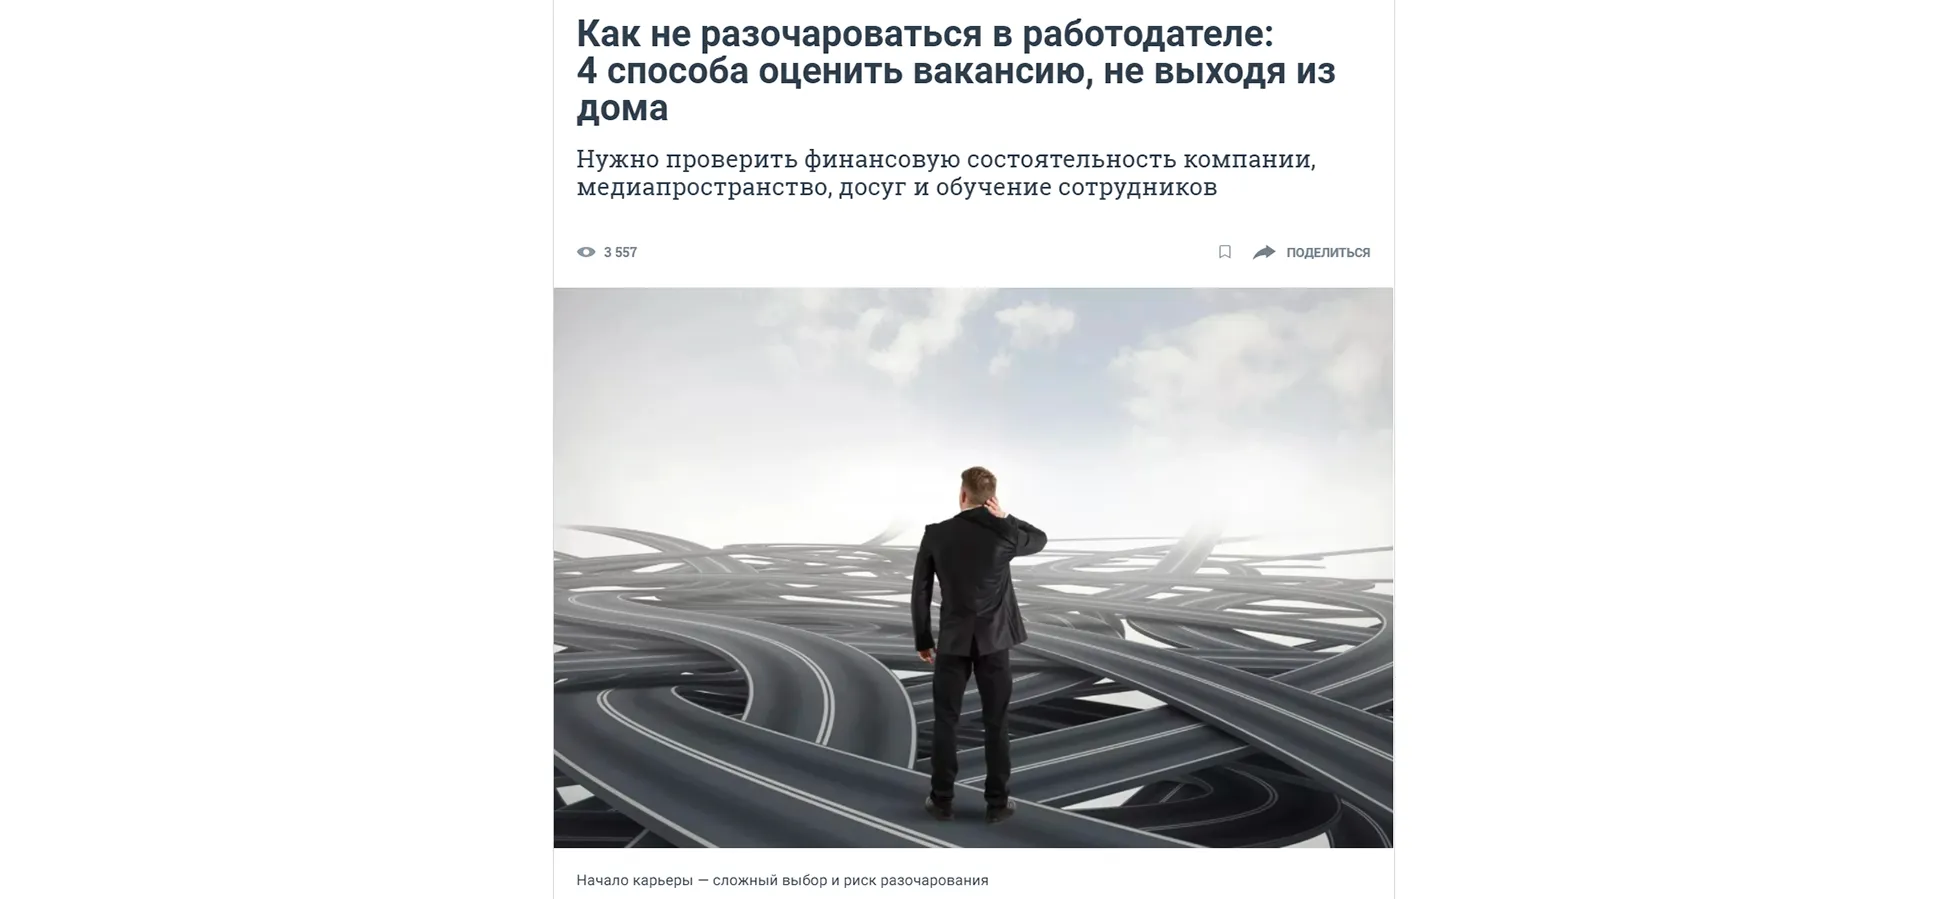 Статья о нашей компании на сайте ngs.ru